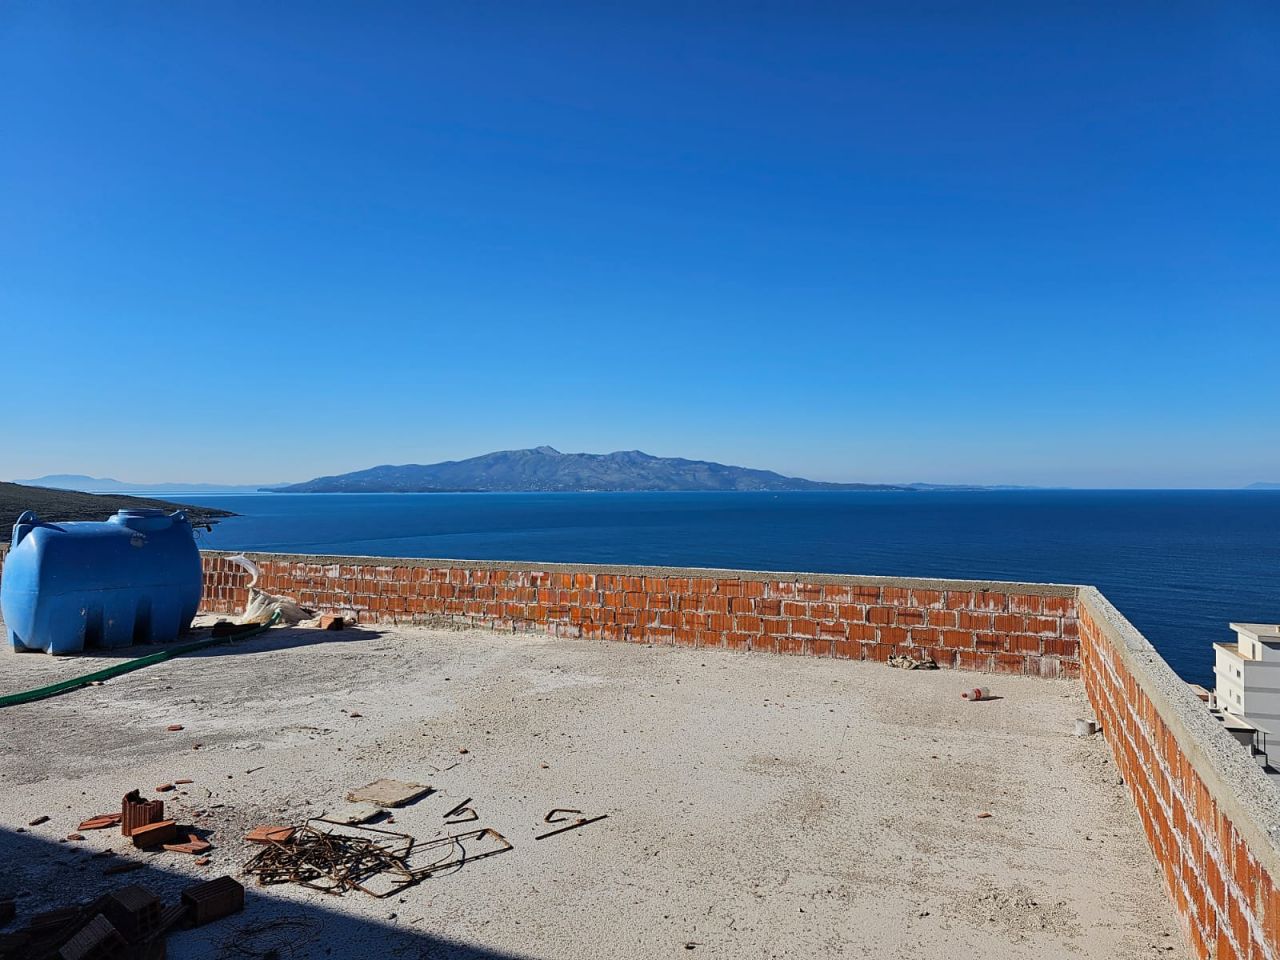 Nowe I Piękne Mieszkanie Na Sprzedaż W Sarandzie W Albanii Zlokalizowane W Nowym Budynku Z Wyjątkową Lokalizacją Blisko Plaży